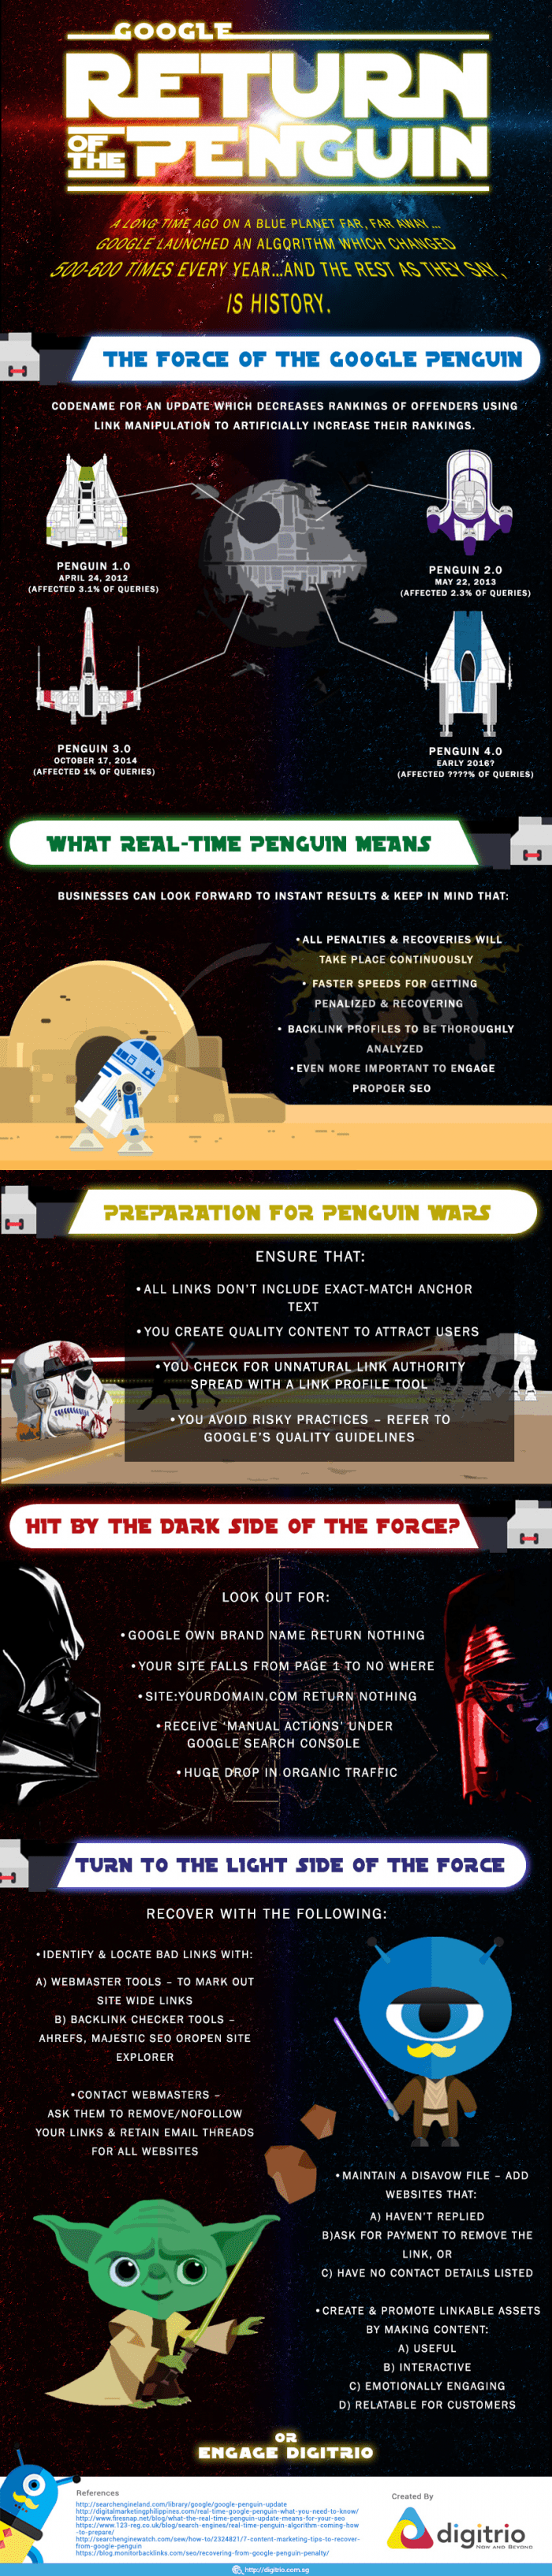 Google's Return of the Penguin Infographic